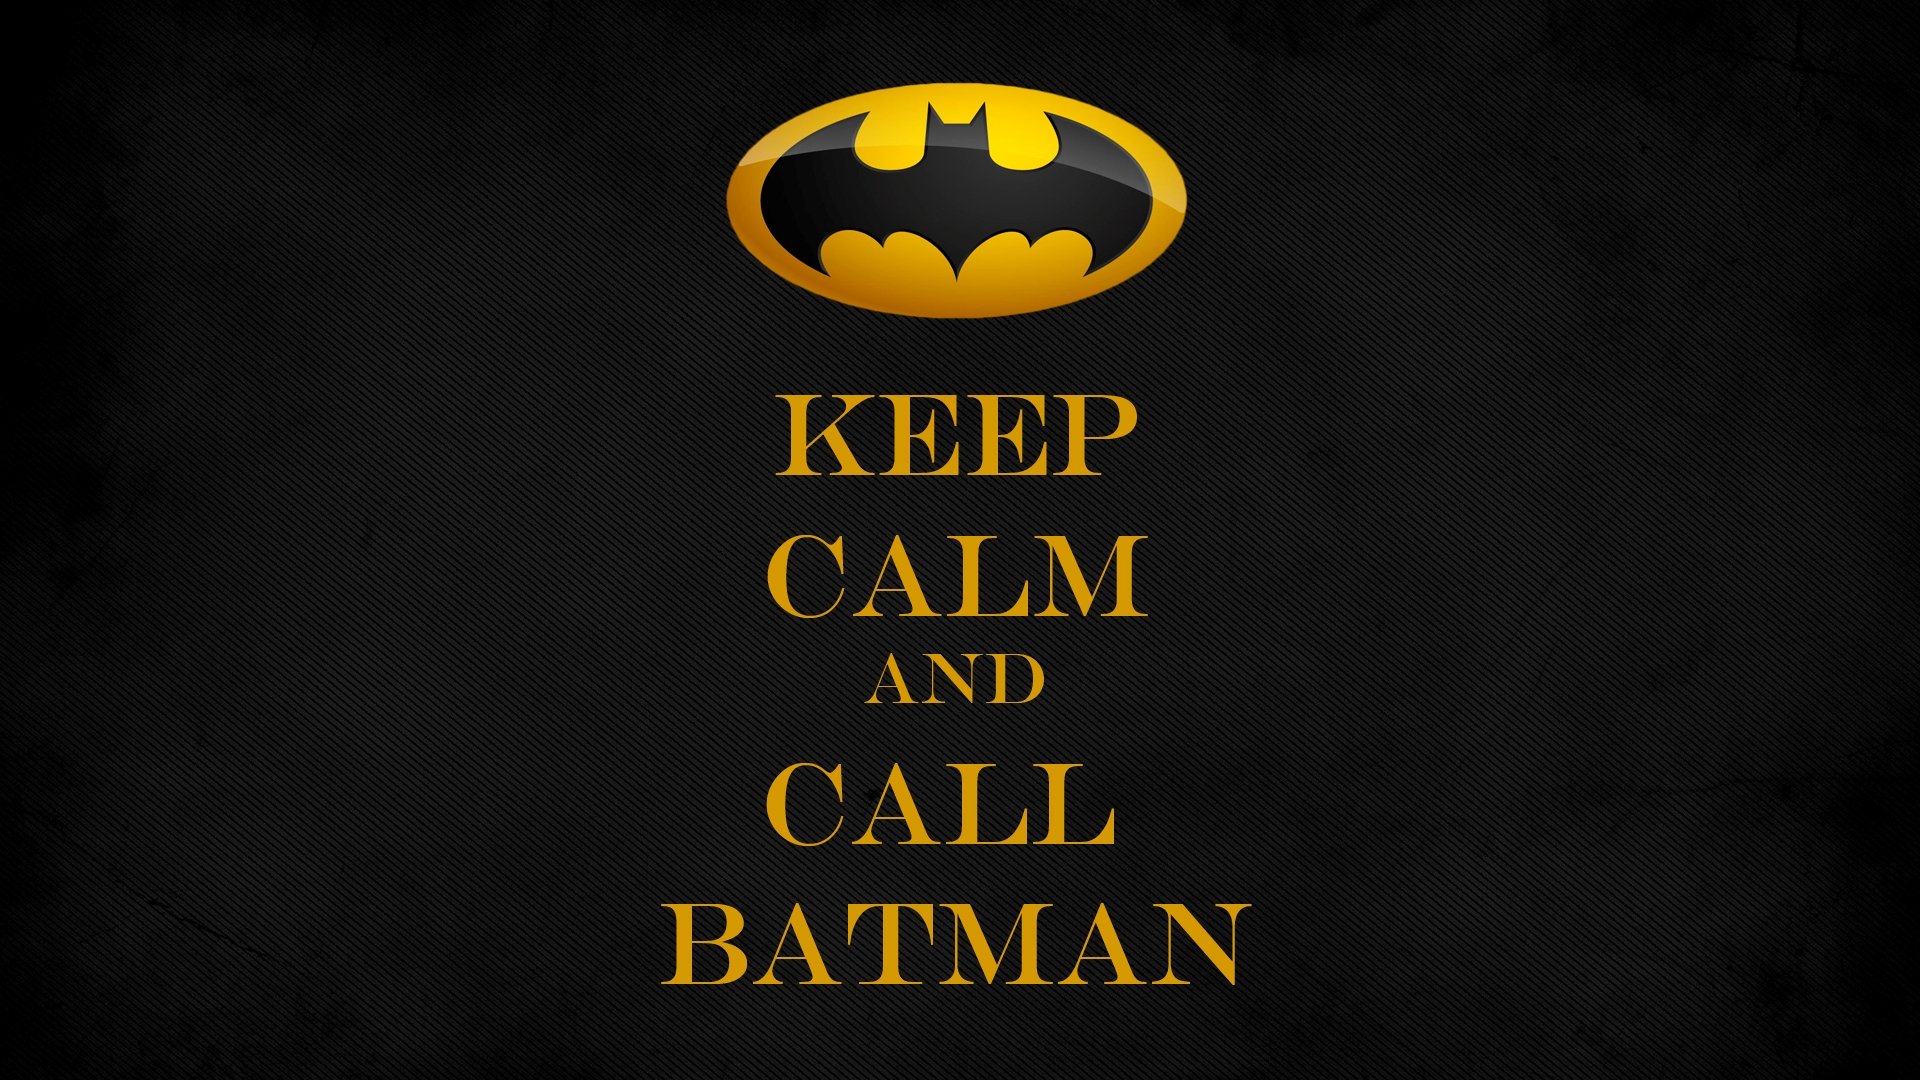 Batman, Batman logo, Keep Calm and..., DC Comics, Comics, Superhero Wallpaper